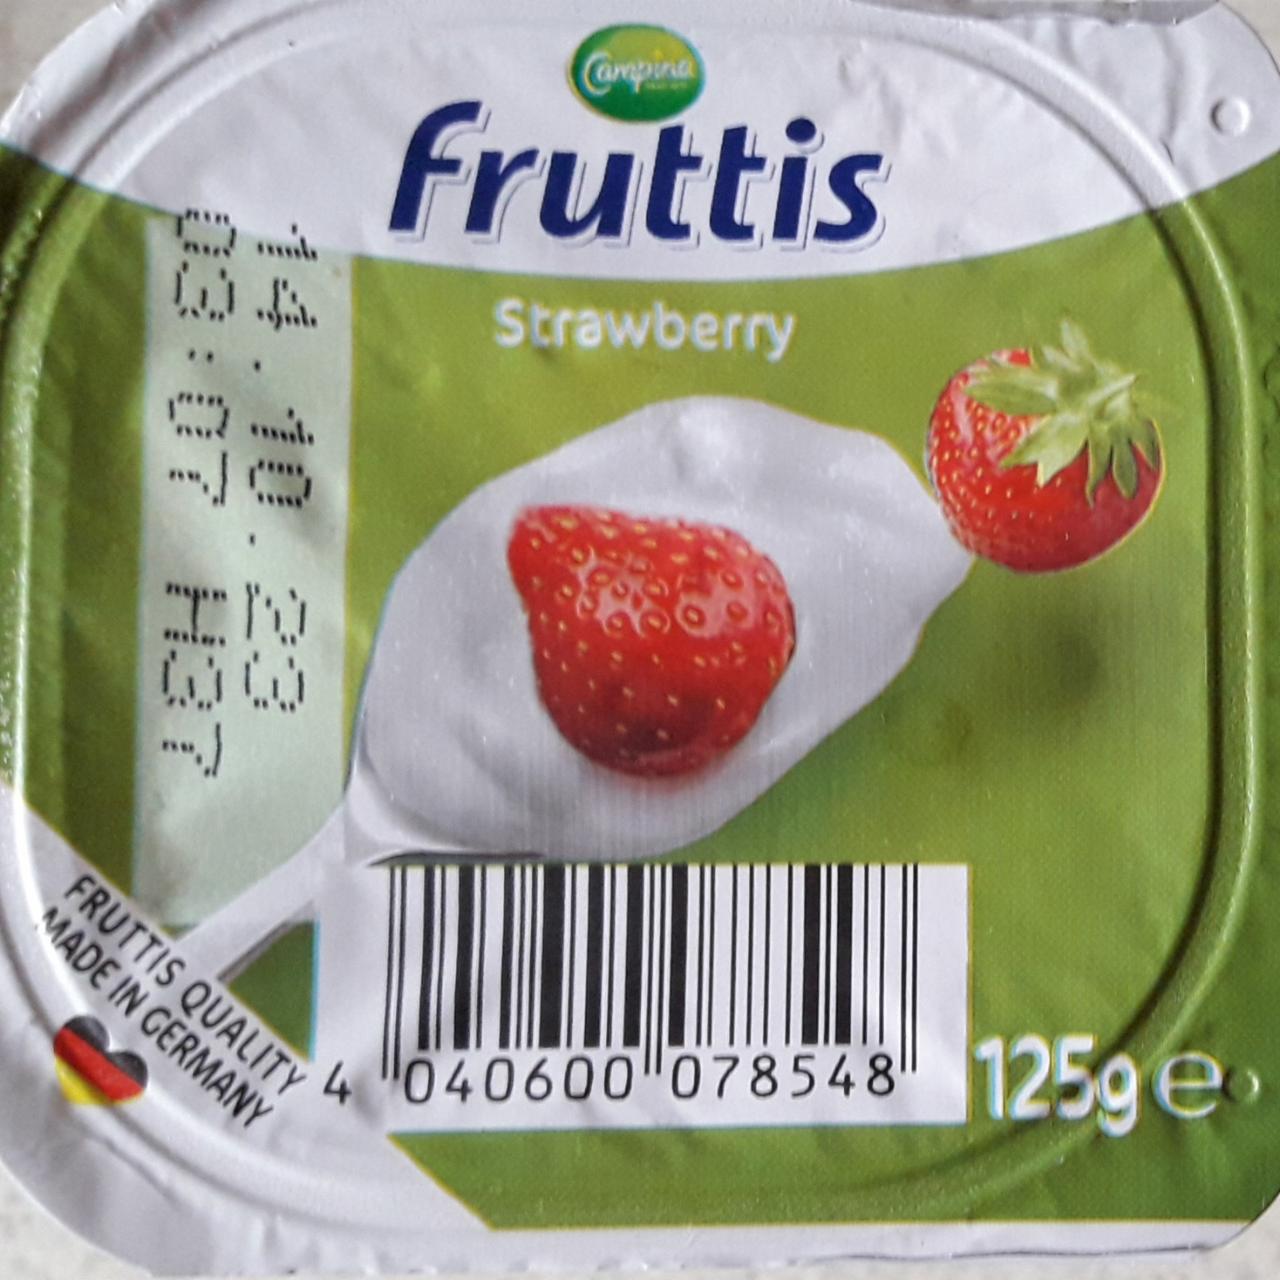 Zdjęcia - Fruttis Strawberry Friesland Campina